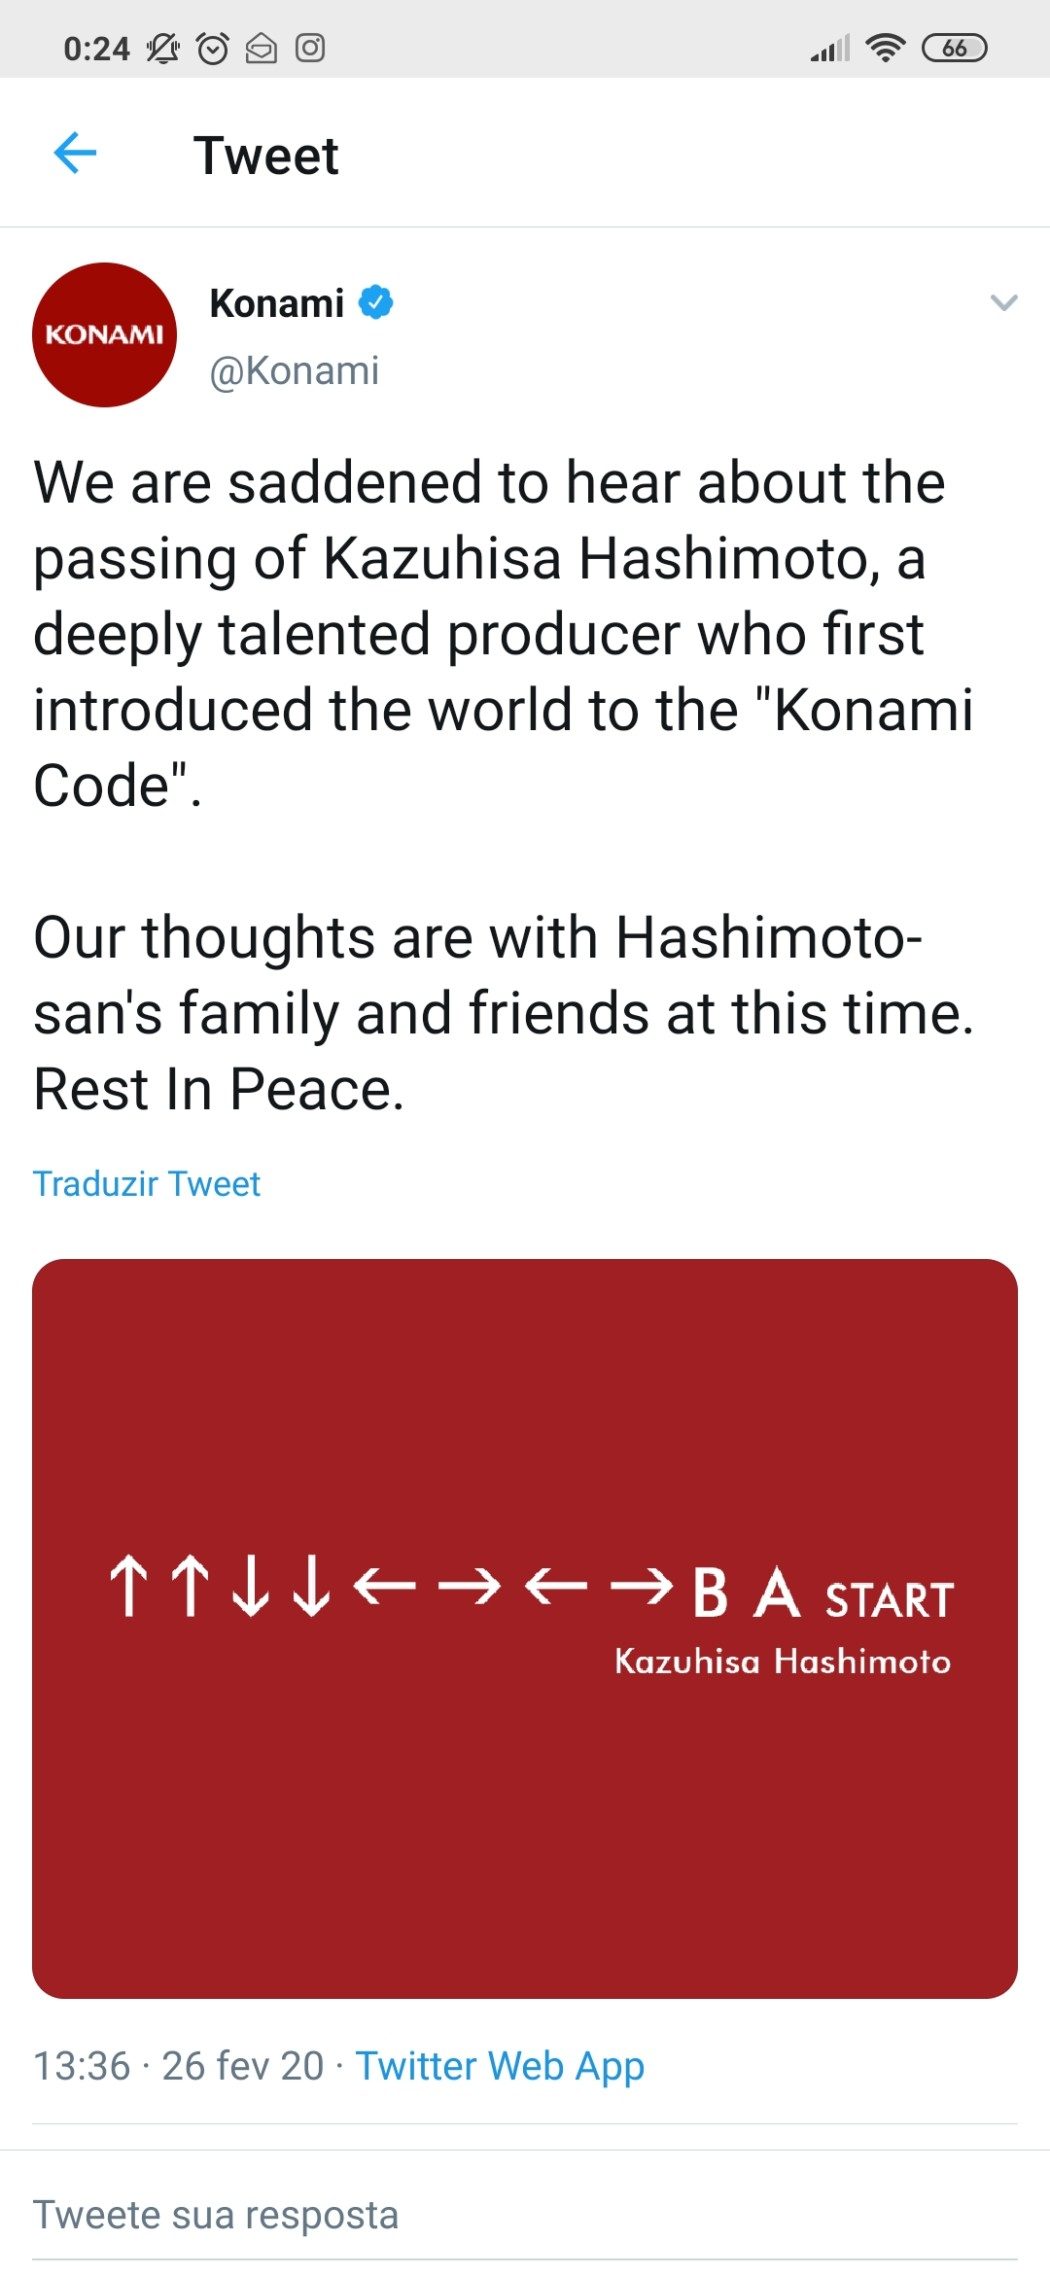 Morre Kazuhisa Hashimoto, o pai do Konami Code